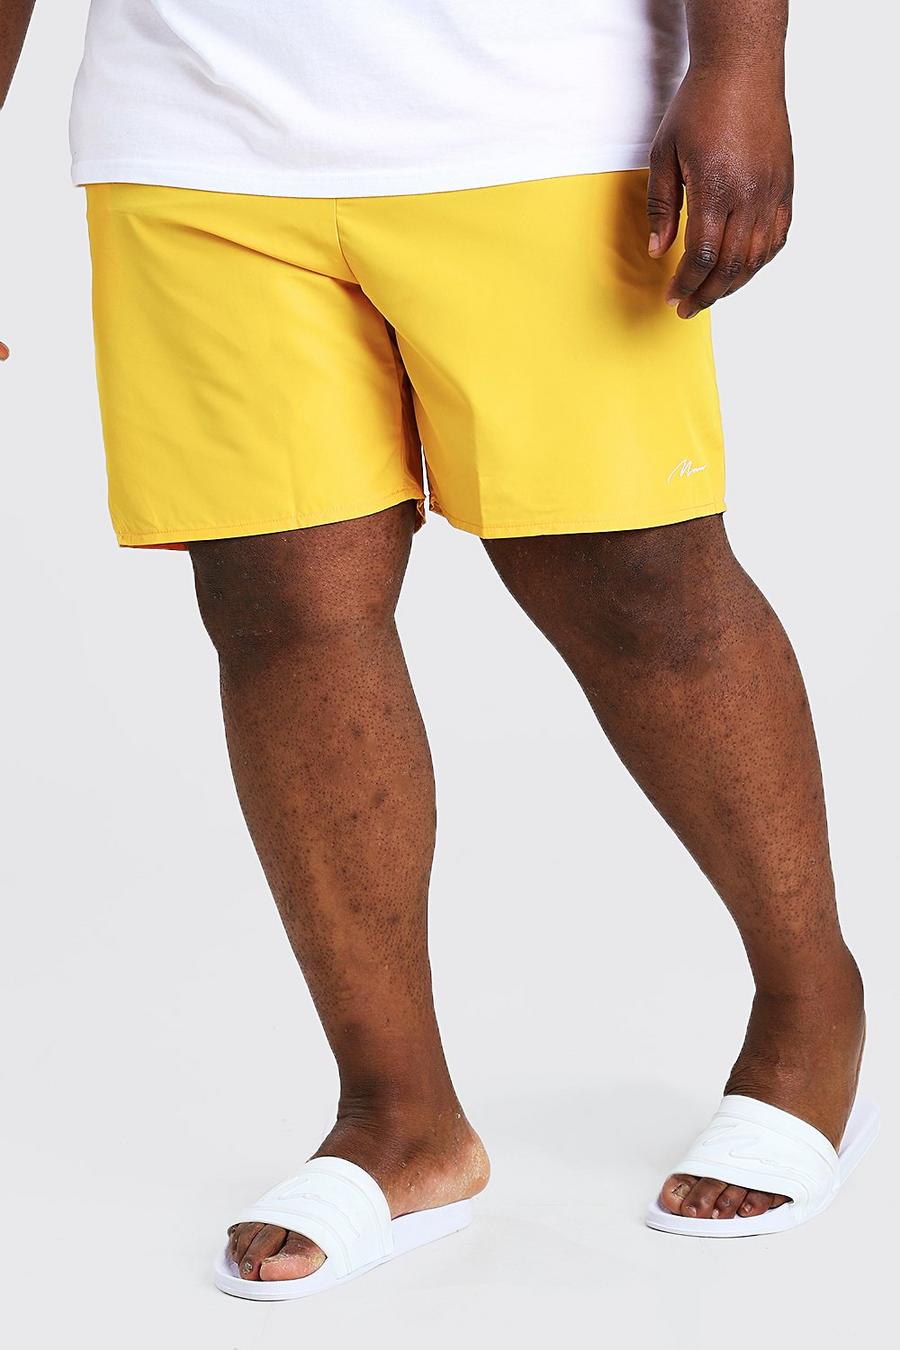 צהוב בגד ים שורט עם חתימת MAN לגברים גדולים וגבוהים image number 1